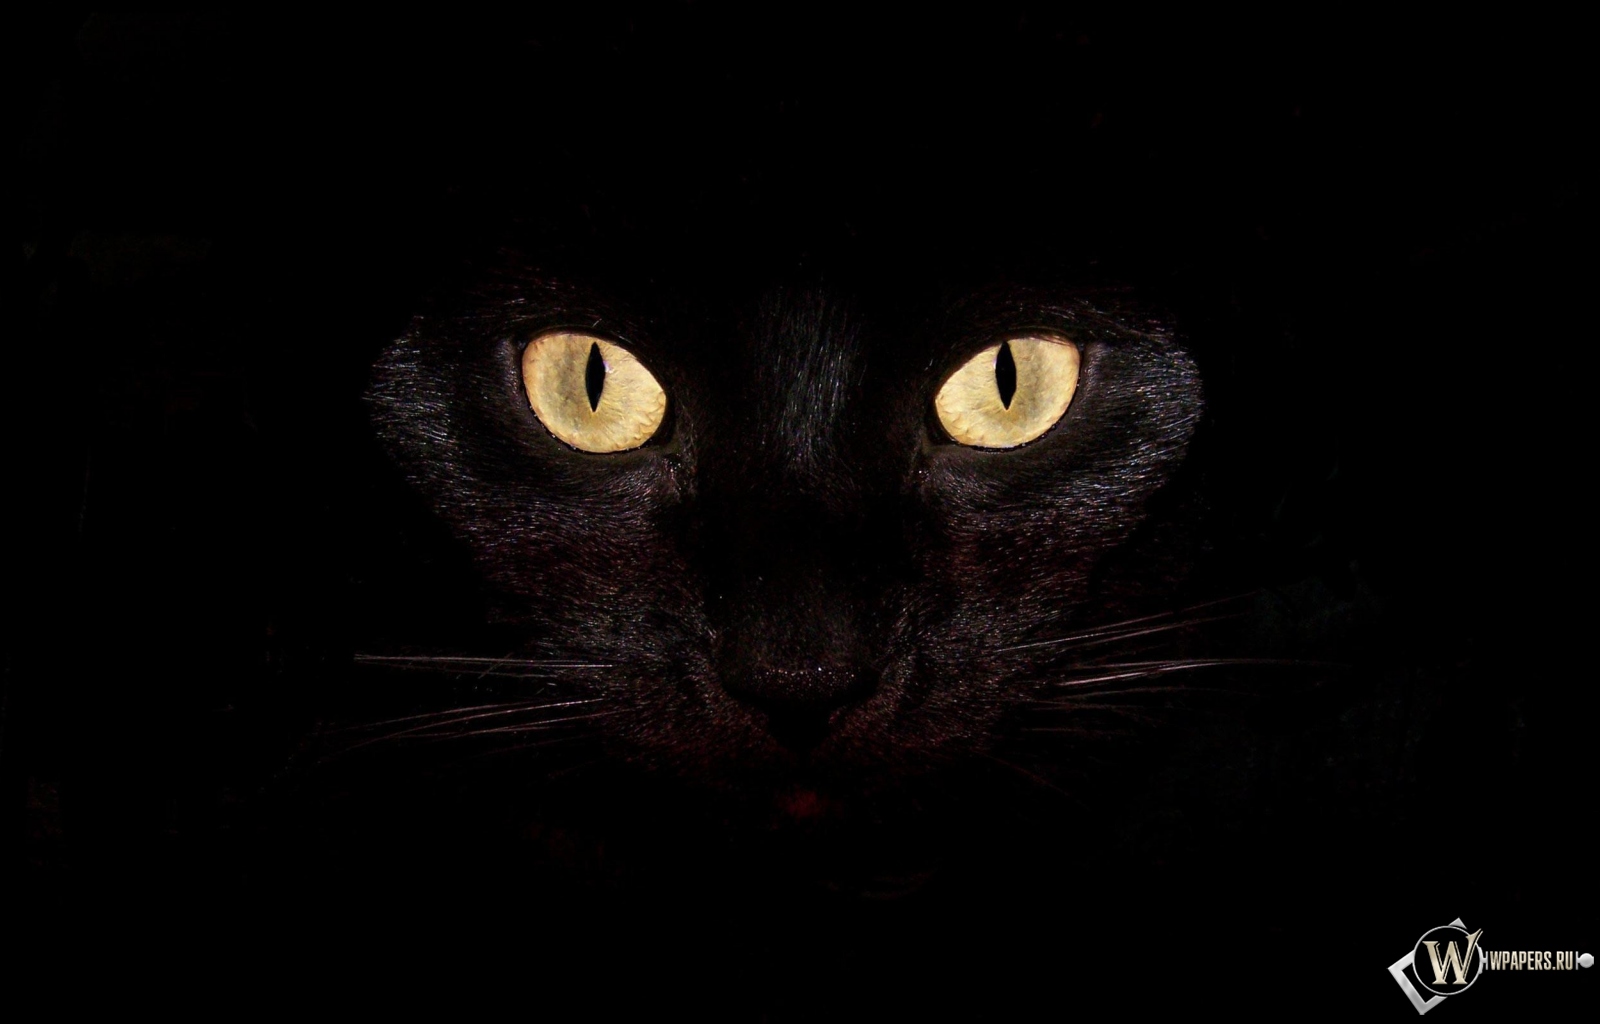 Черная кошка на чернофм фоне 1600x1024